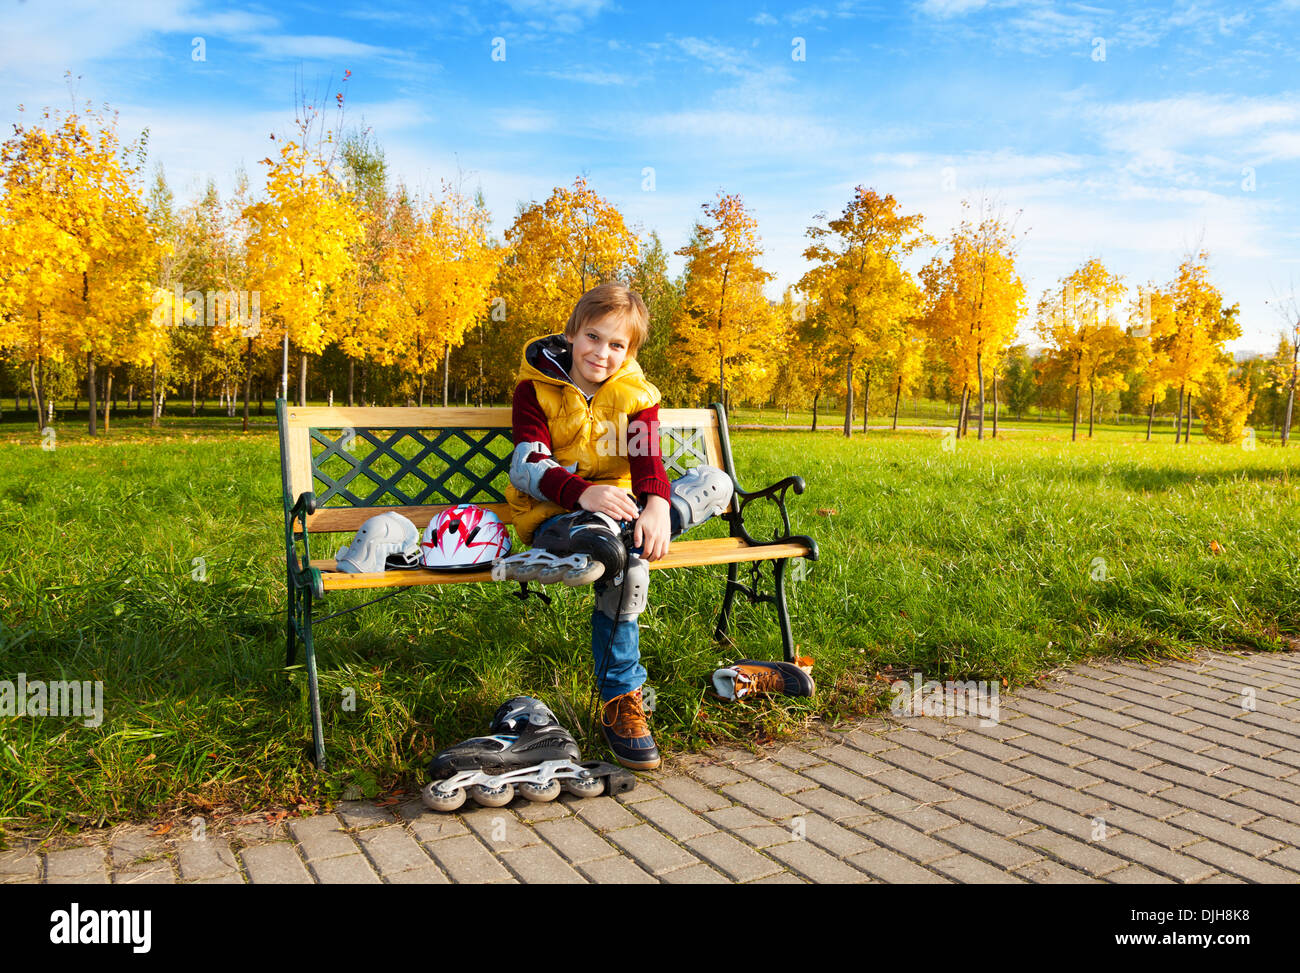 Nette junge im Herbst Freizeitkleidung setzen auf Rollschuhen sitzen auf der Bank im park Stockfoto